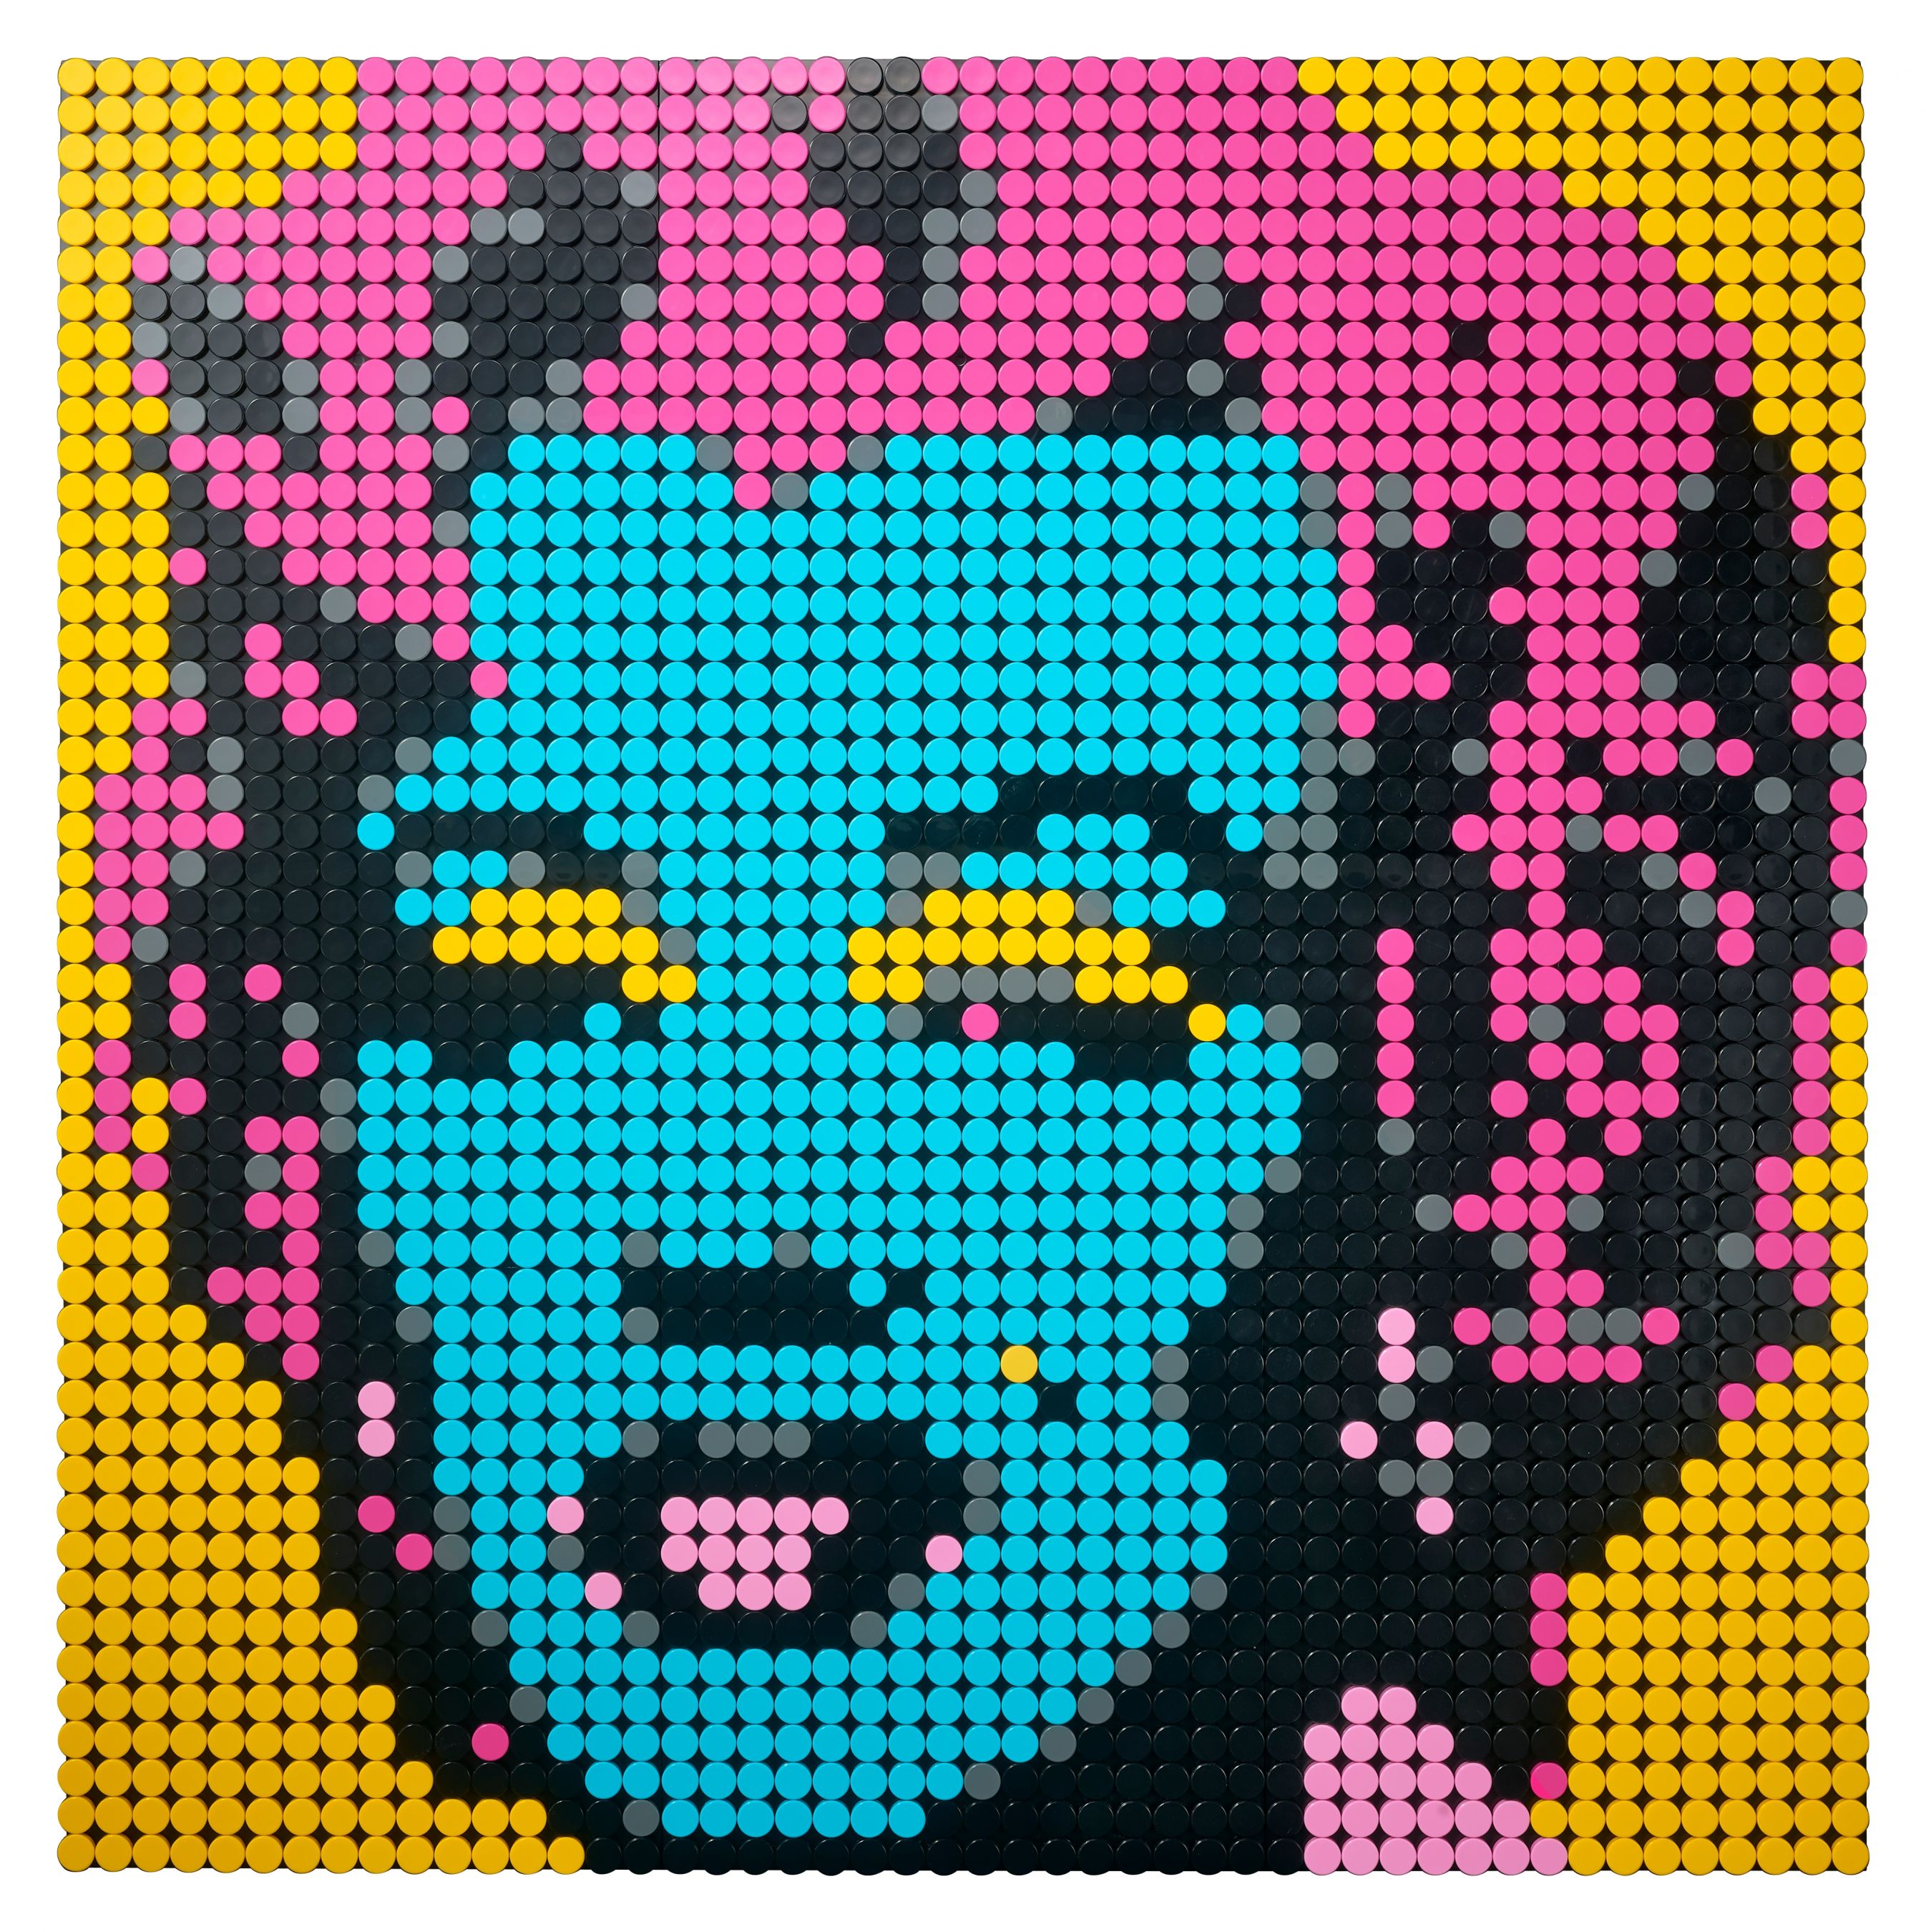 LEGO Art 31197 Andy Warhol's Marilyn Monroe LEGO_31197_alt6.jpg